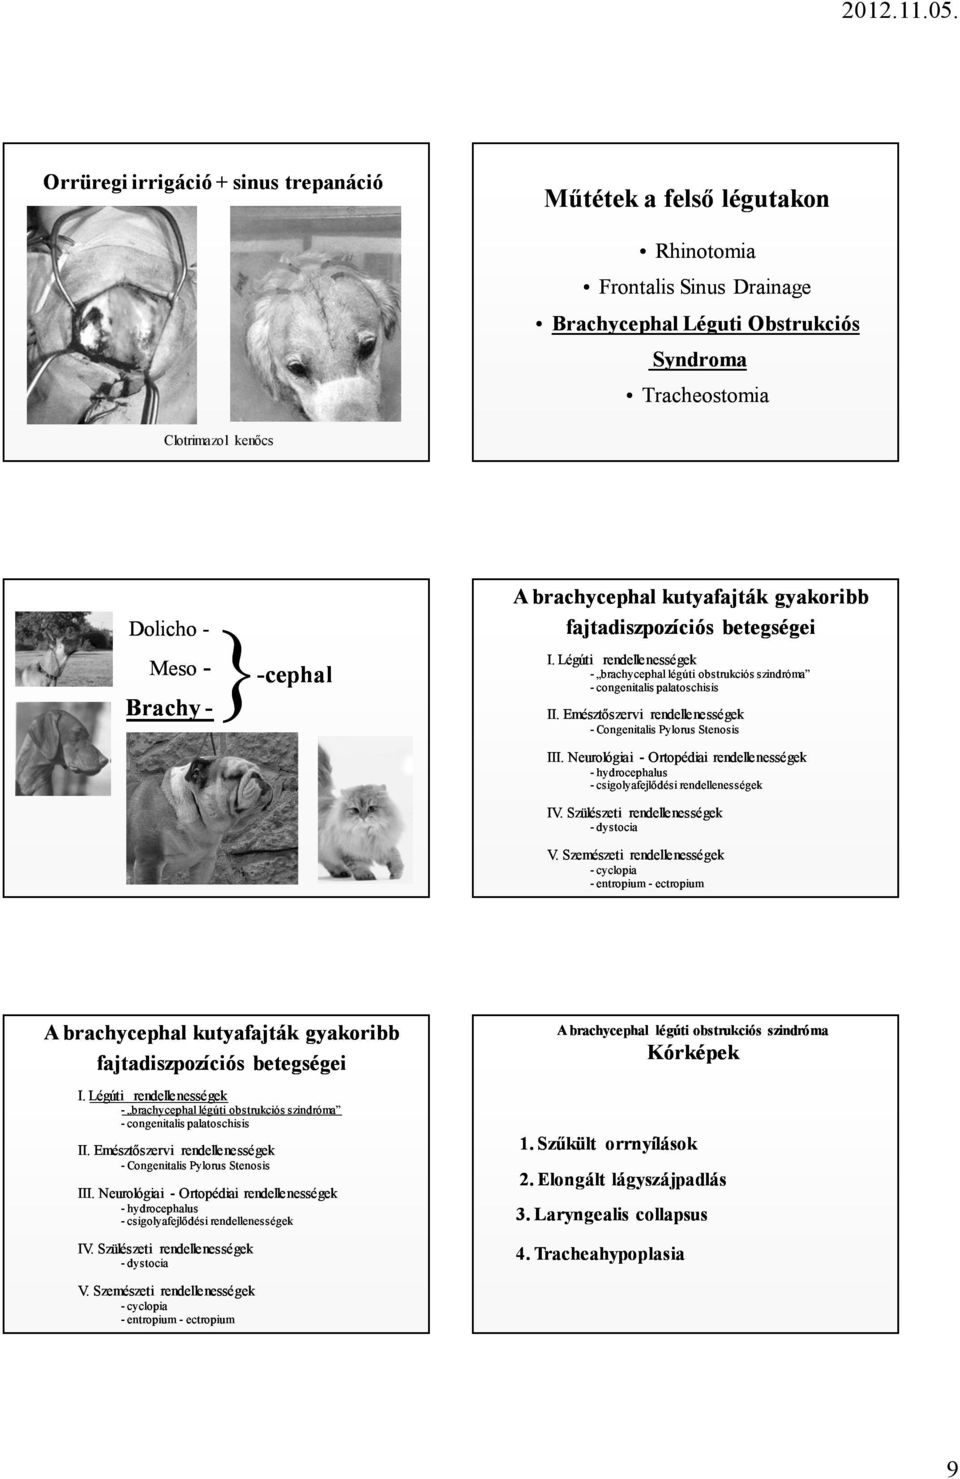 Emésztőszervi rendellenességek - Congenitalis Pylorus Stenosis III. Neurológiai - Ortopédiai rendellenességek - hydrocephalus - csigolyafejlődési rendellenességek IV.